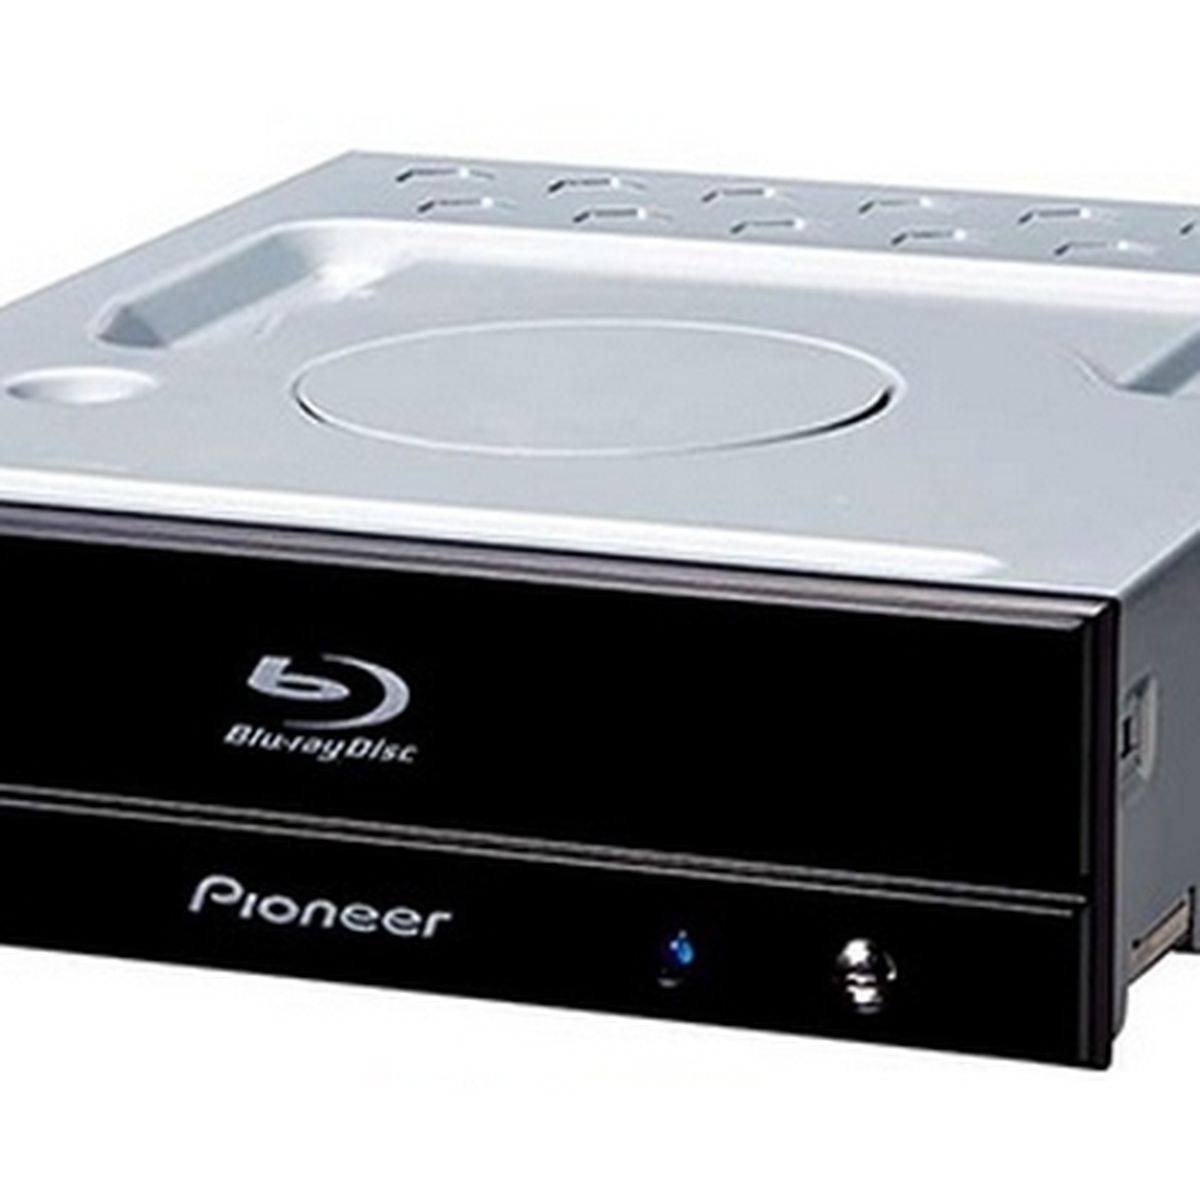 Pioneer presenta un nuevo reproductor Blu-ray UHD portátil para